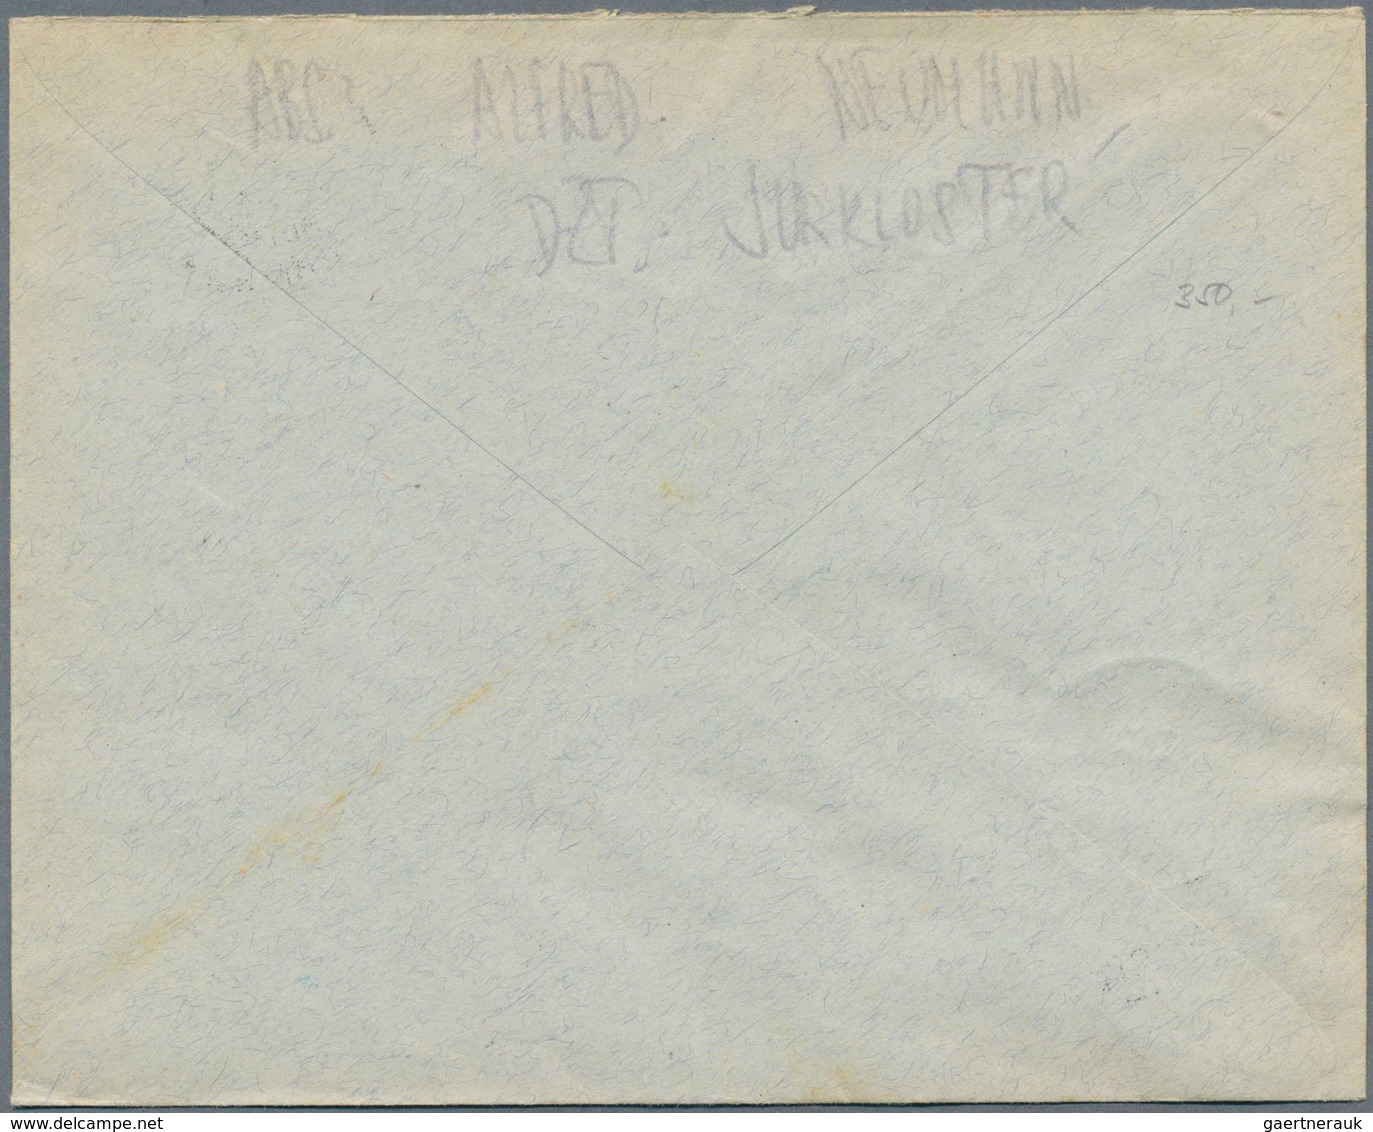 15565 Österreich - Portomarken: 1917, 2 Unterfrankierte Briefe Mit NACHPORTO, 1x In Wien Mit 25 H Belegt U - Portomarken